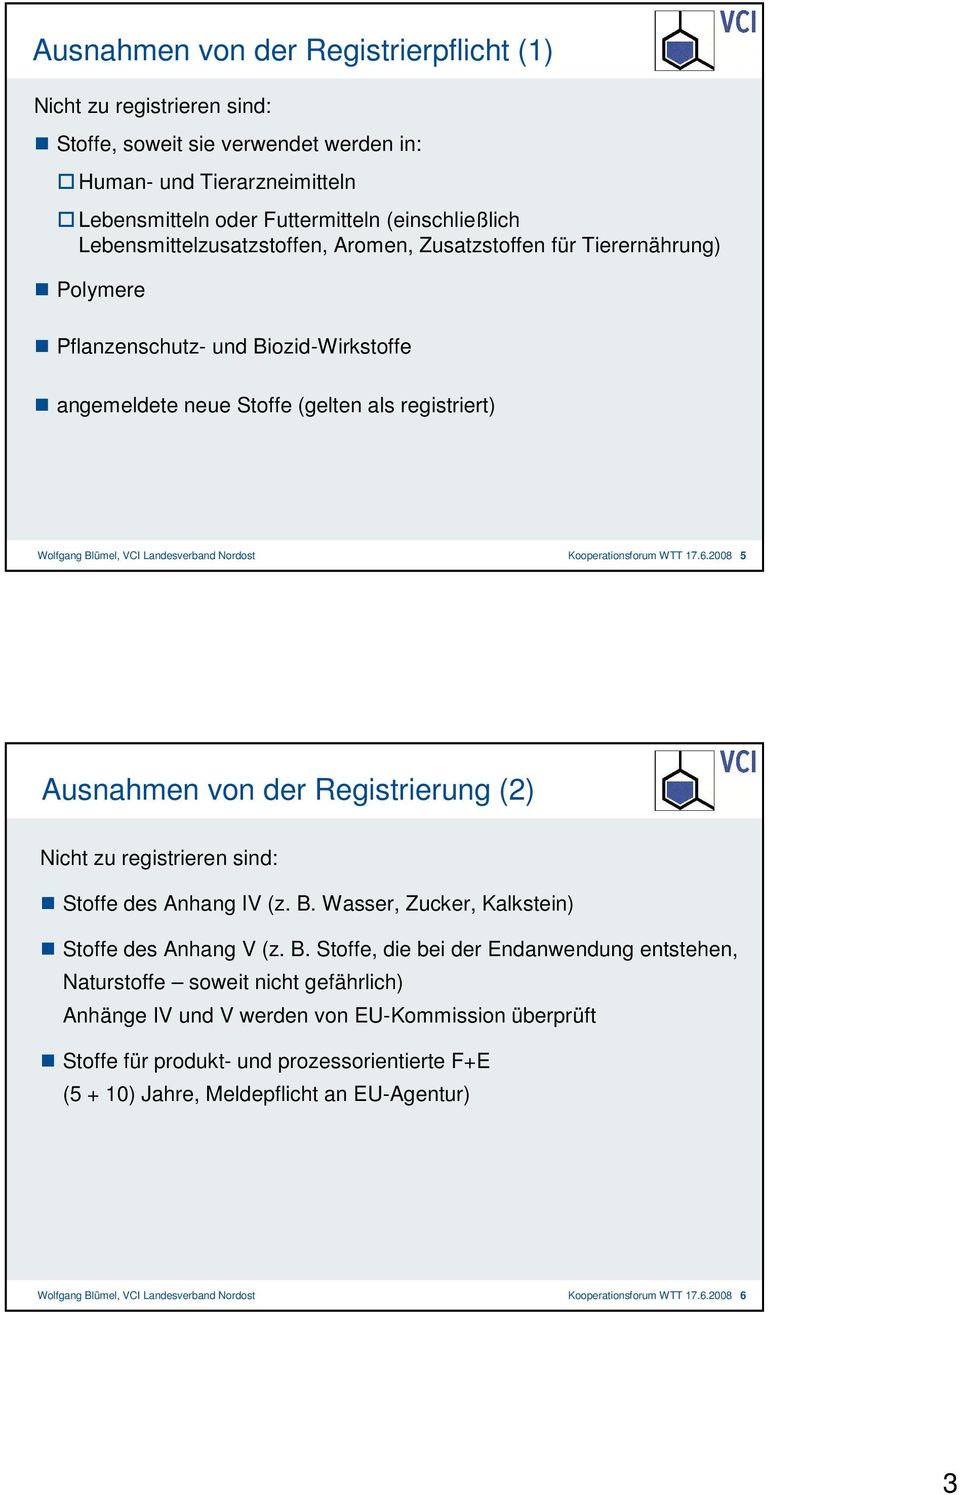 Nordost Kooperationsforum WTT 17.6.2008 5 Ausnahmen von der Registrierung (2) Nicht zu registrieren sind: Stoffe des Anhang IV (z. B.